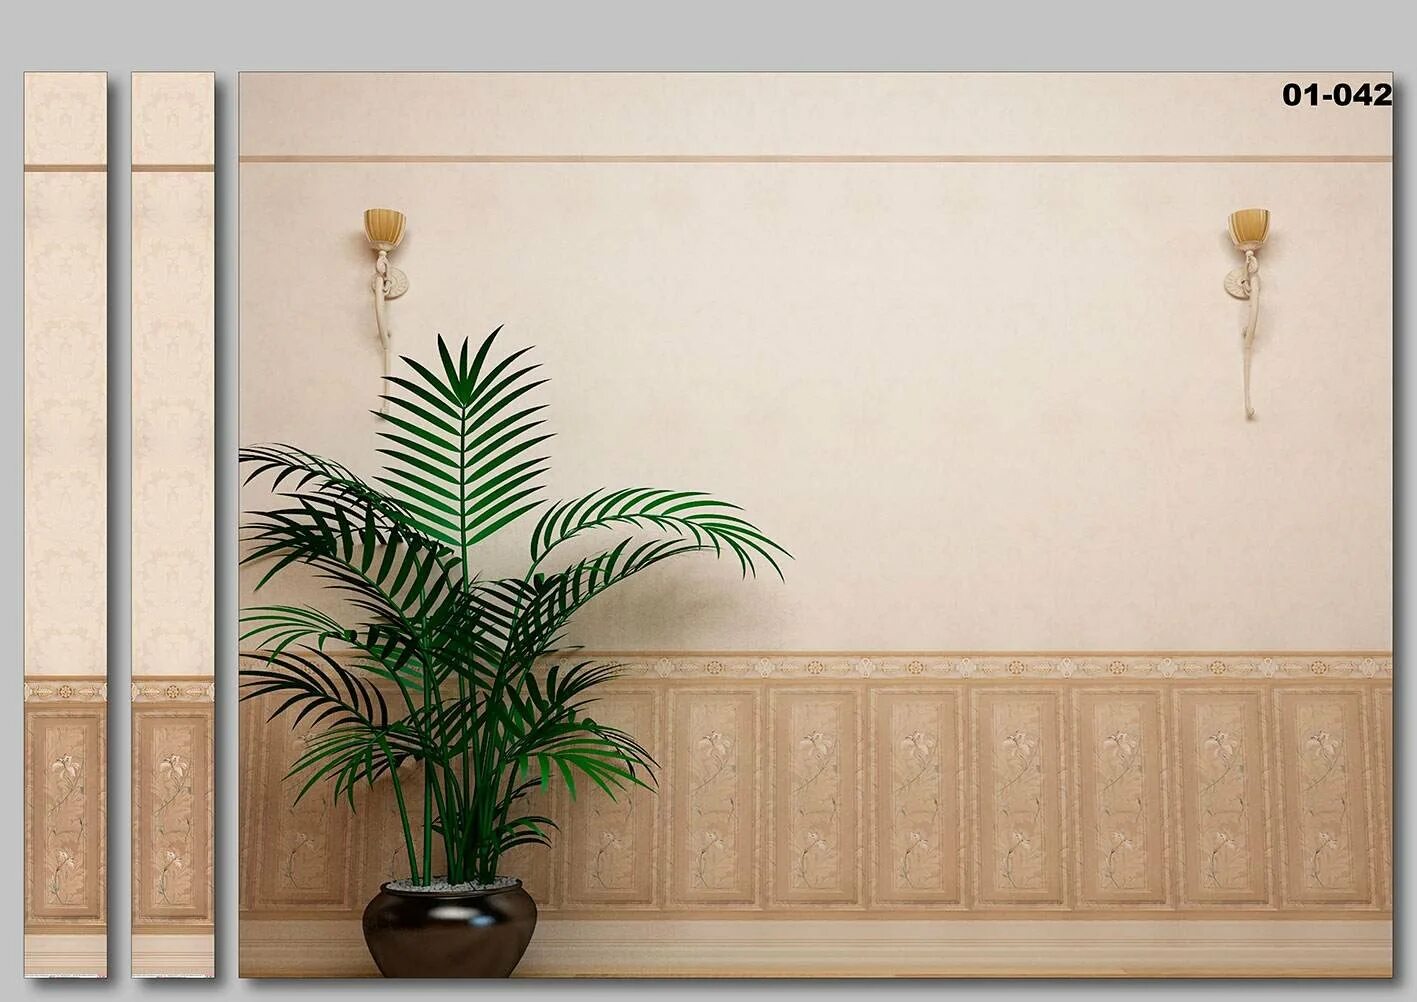 Сайт стеновых панелей. Панель ПВХ 3d век бамбук оливковый 2700x250x9 мм (0,675 кв.м.). Панели для стен. Настенные панели. Декоративные пластиковые панели.